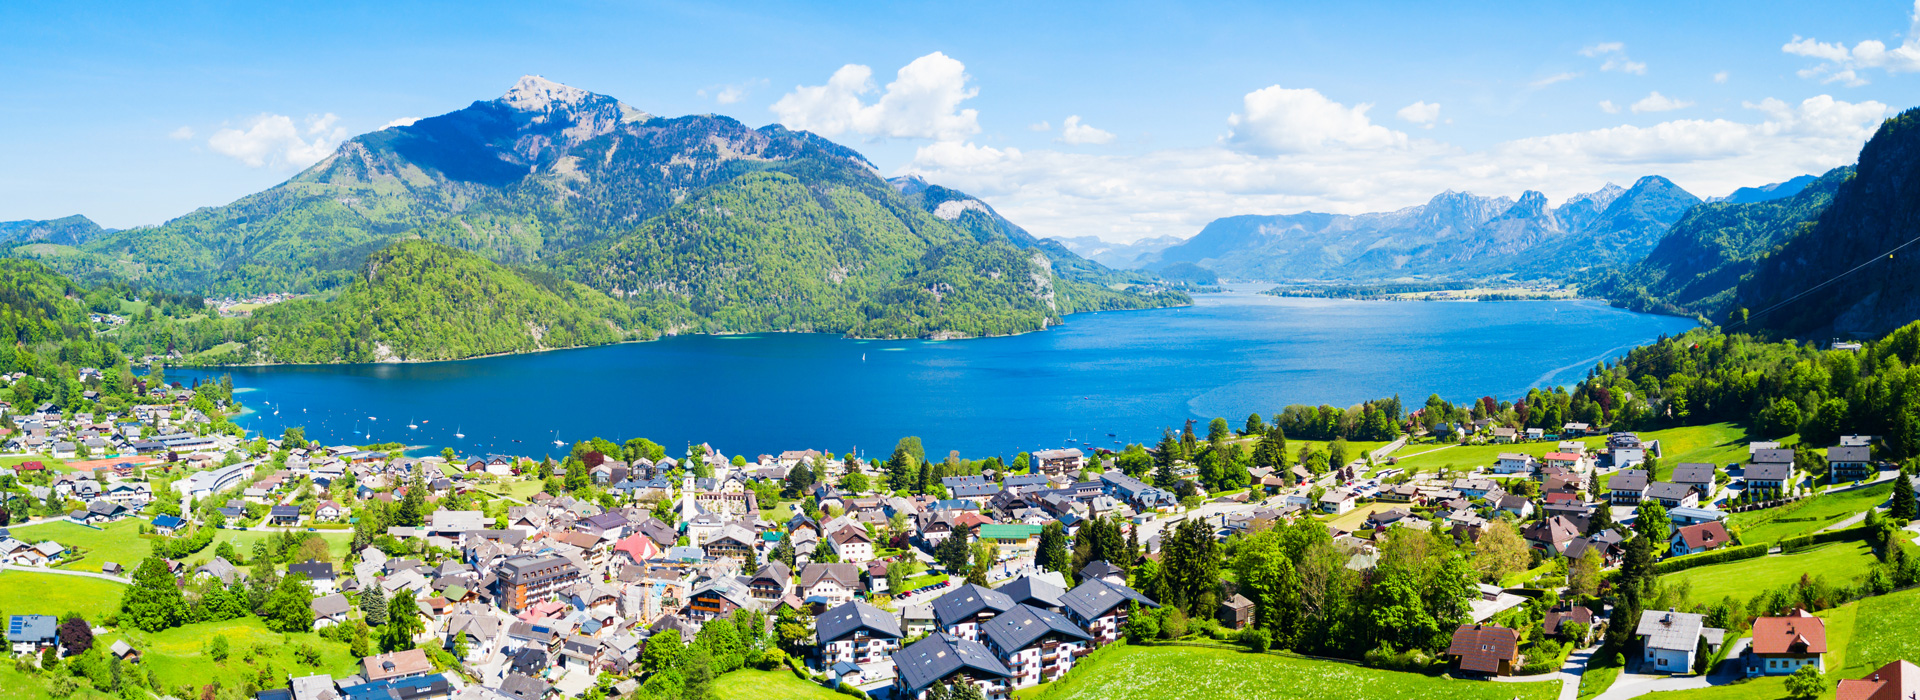 Urlaub am See in luxuriösen Seehotels in Österreich